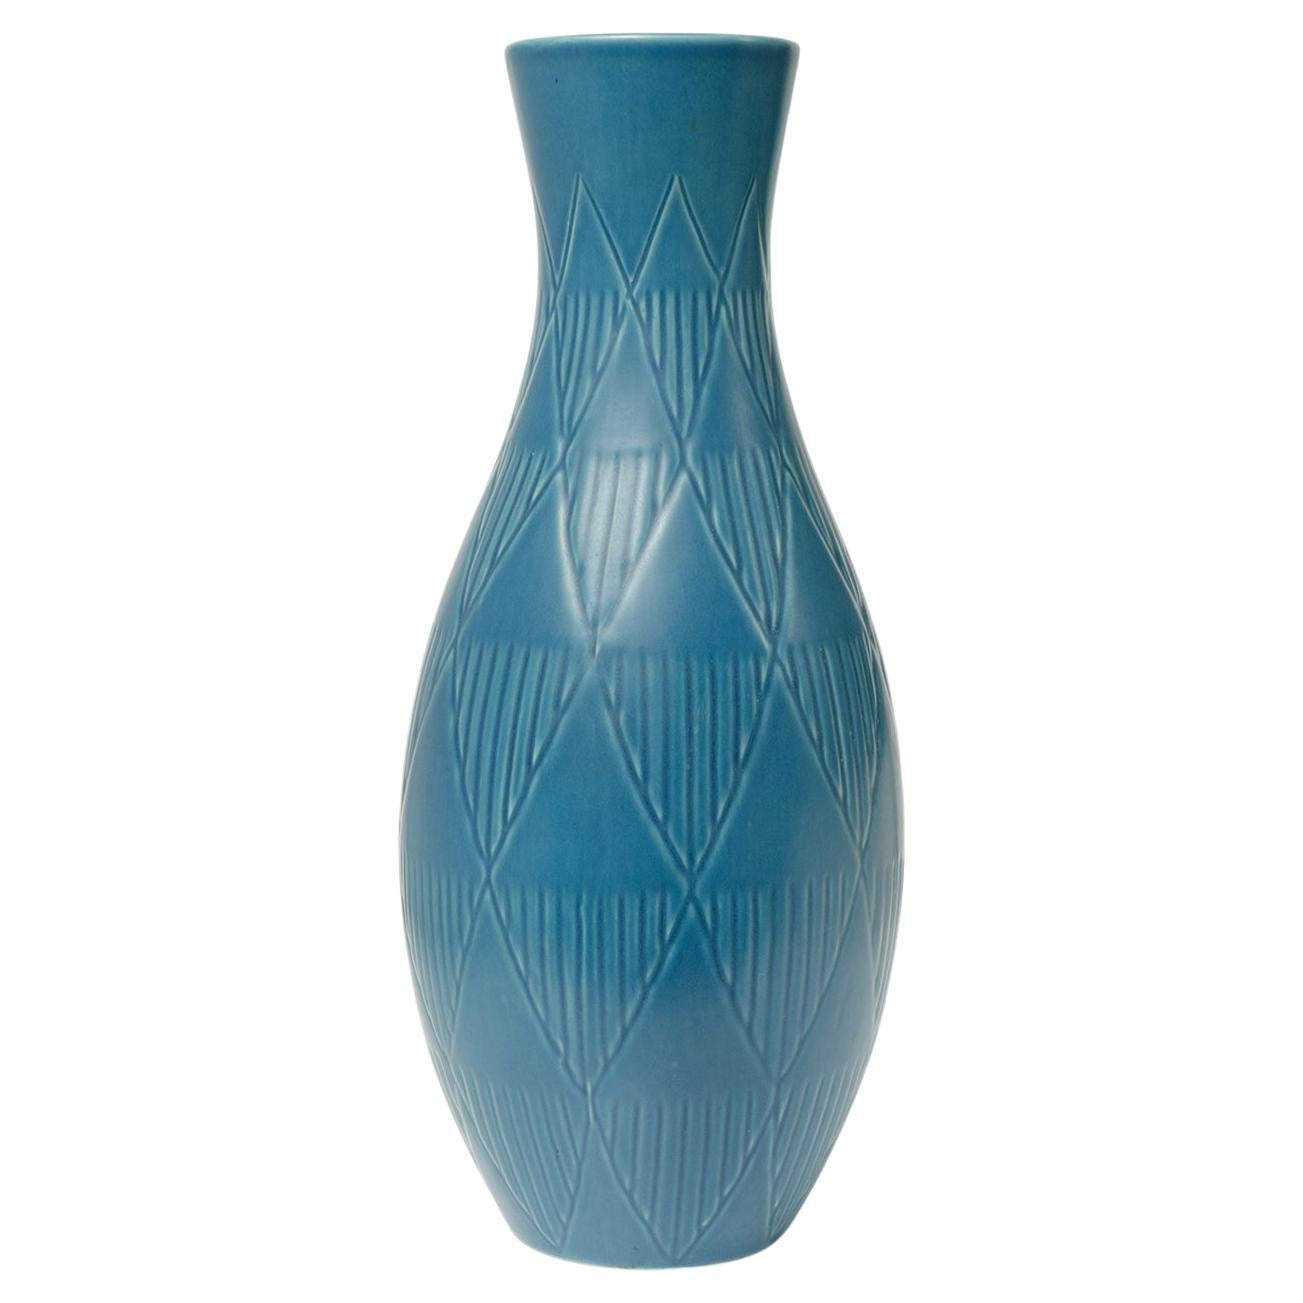 Vase bulbeux en céramique bleue à motif géométrique en relief Bo Fajans, Suède 1940